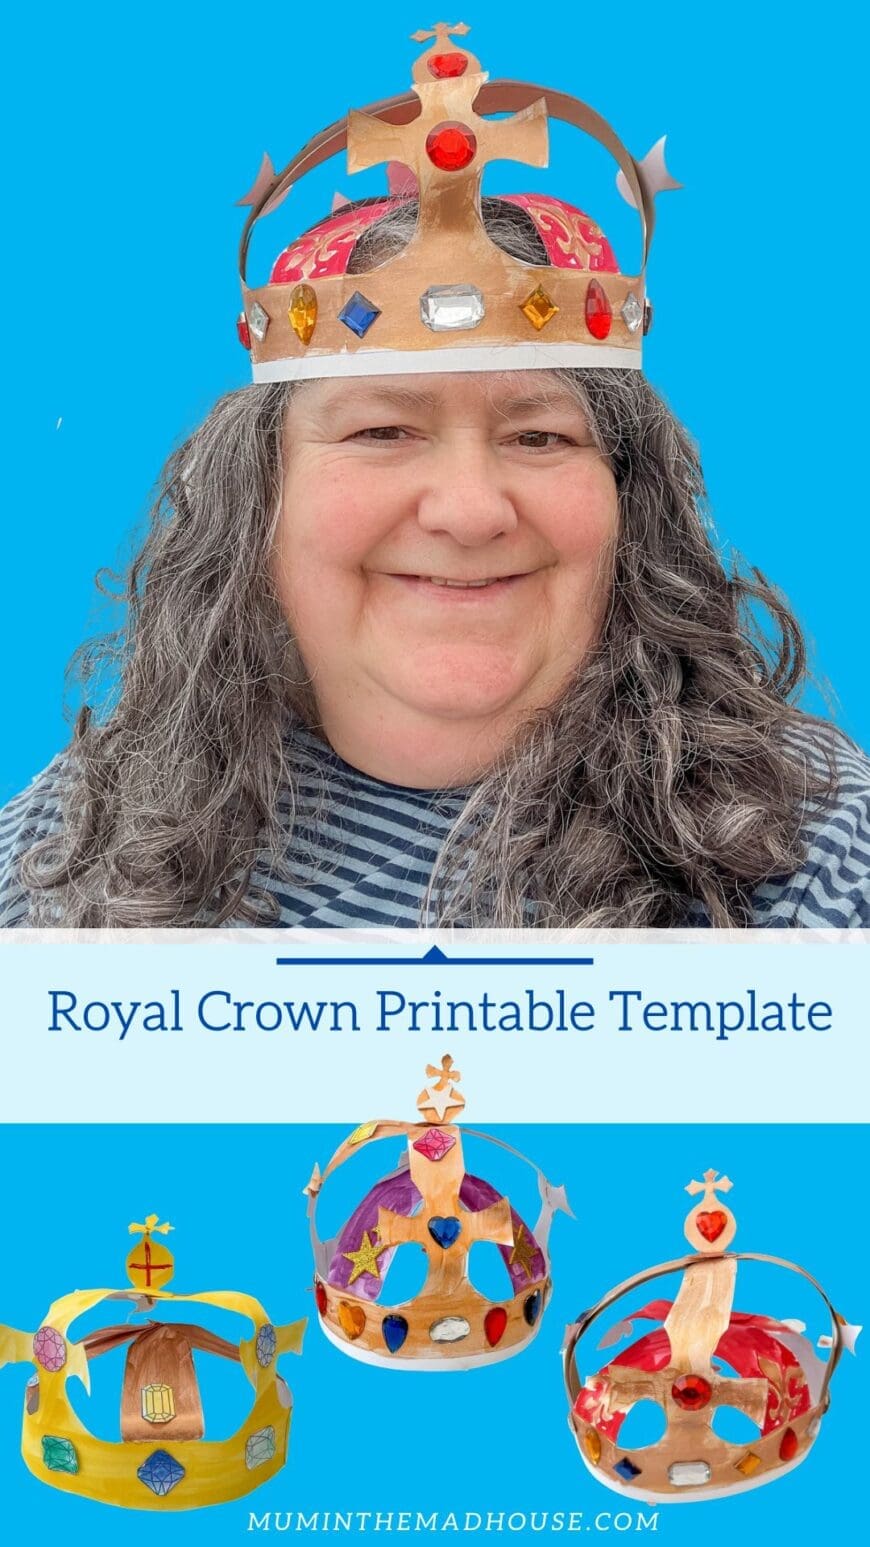 Royal Crown Printable Template